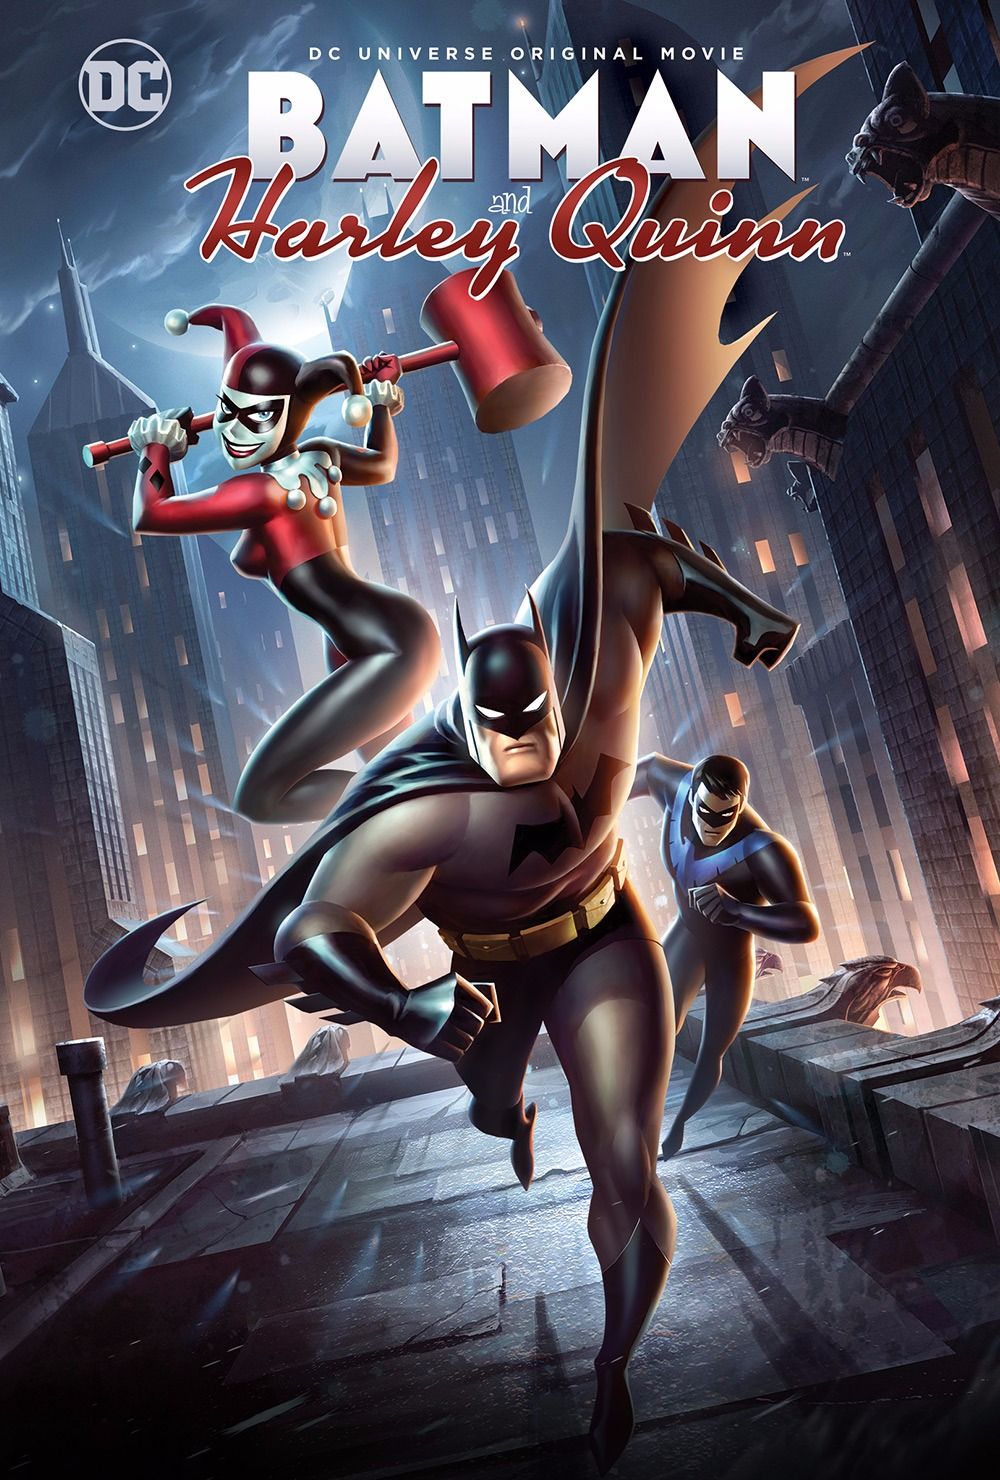 ดูหนังออนไลน์ฟรี Batman and Harley Quinn (2017) แบทแมน ปะทะ วายร้ายสาว ฮาร์ลี่ ควินน์ หนังเต็มเรื่อง หนังมาสเตอร์ ดูหนังHD ดูหนังออนไลน์ ดูหนังใหม่